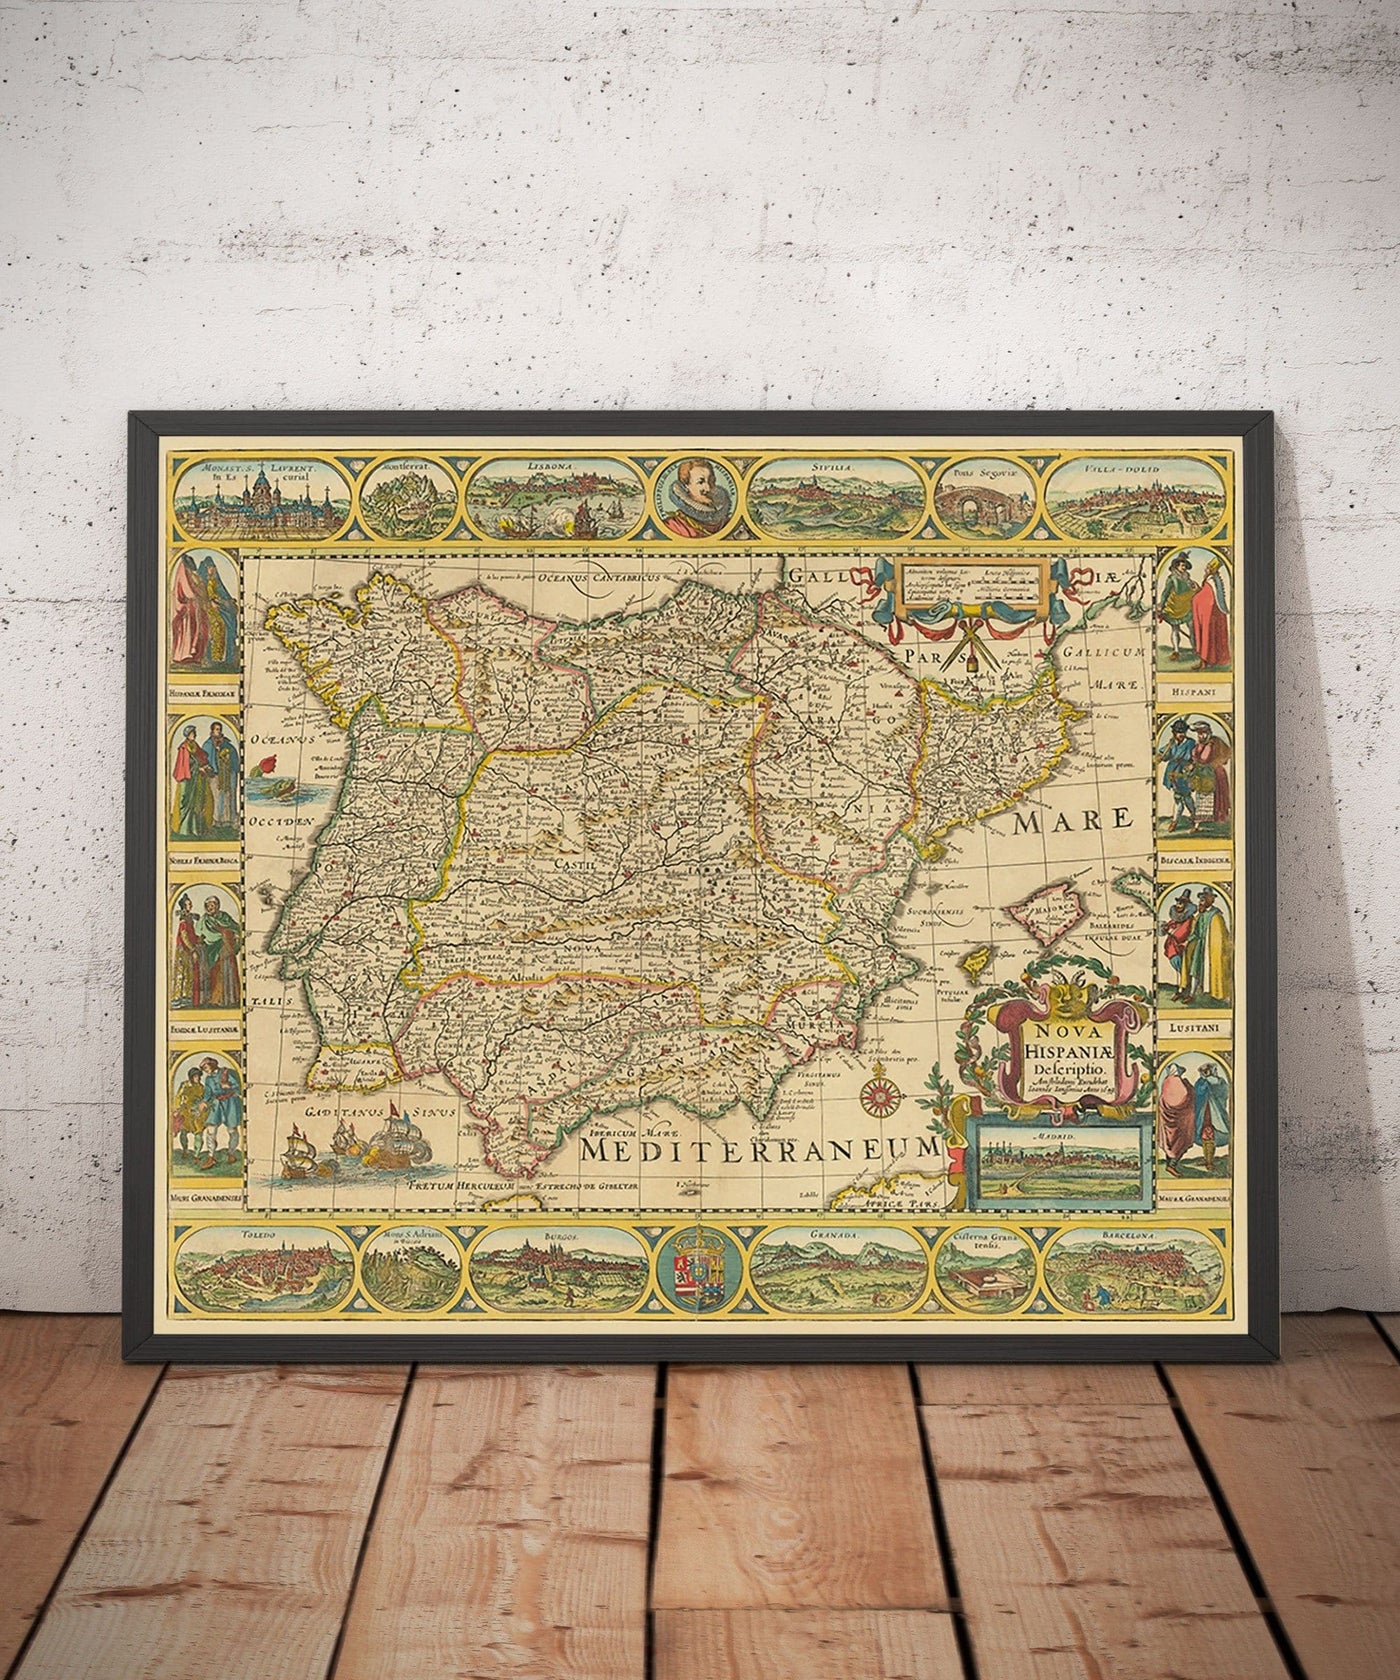 Alte Karte von Spanien & Portugal, 1659 von Jan Jansson - Madrid, Lissabon, Barcelona, ​​Katalonien, Valencia, Iberia, Mittelmeermeer